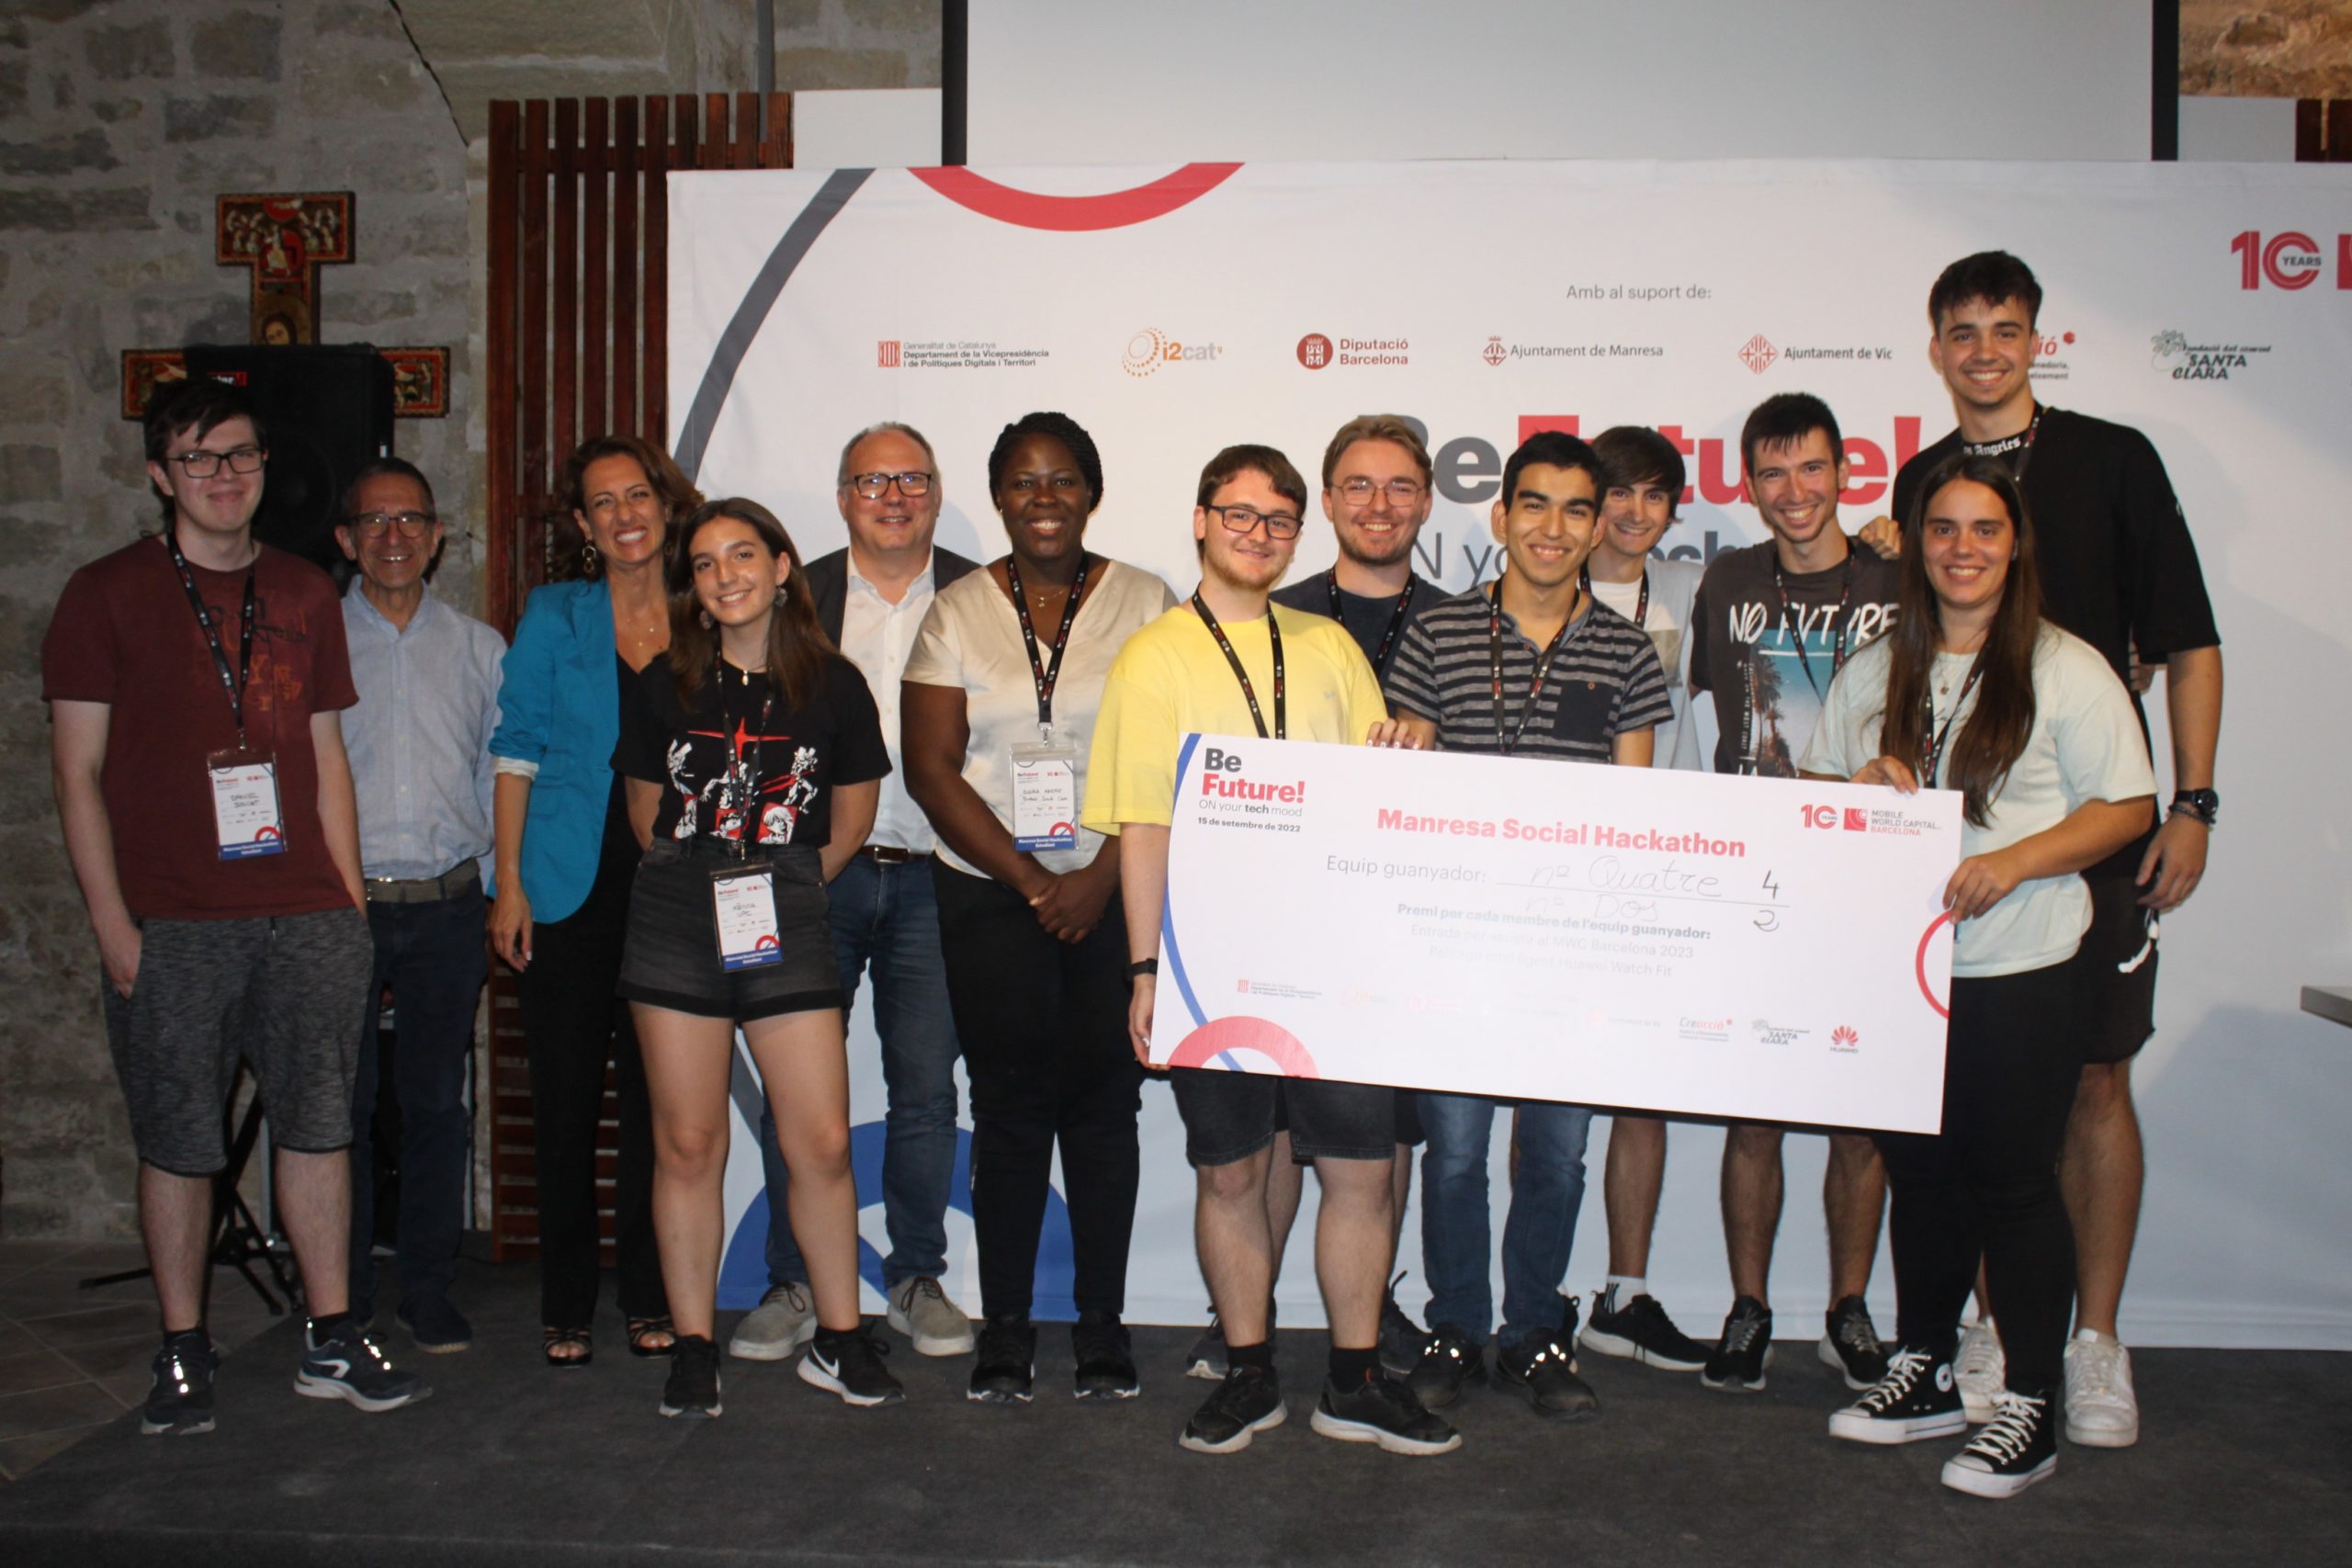 Los equipos ganadores de la ‘Manresa Social Hackathon’ reciben un premio de 1.500€ para desarrollar sus soluciones